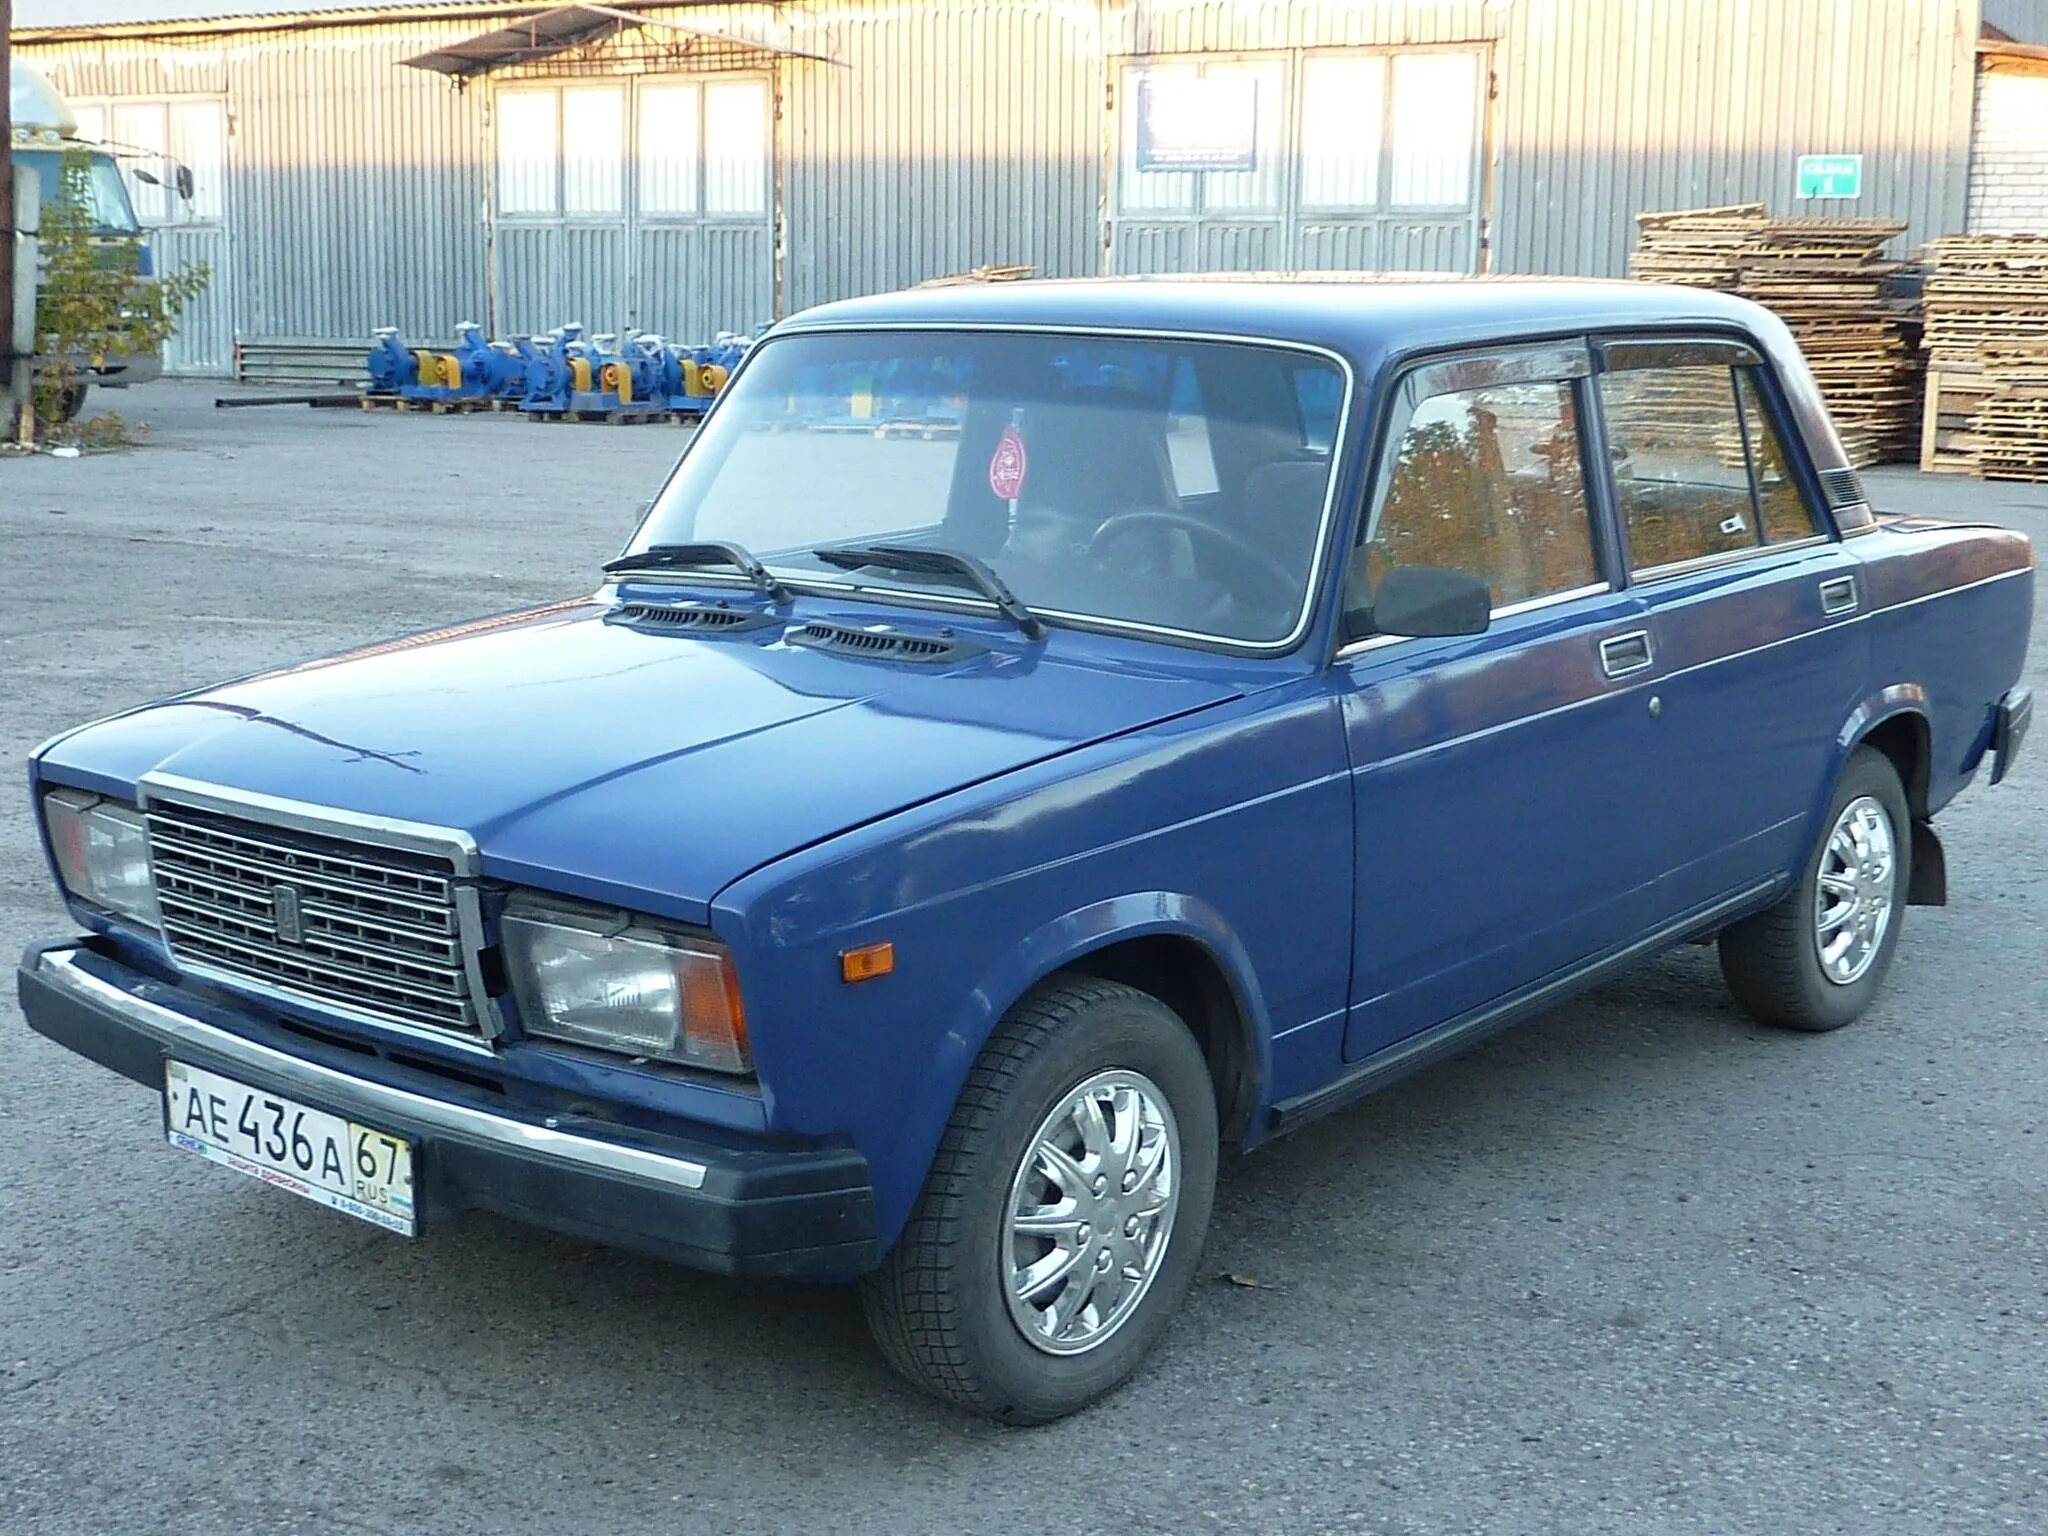 ВАЗ-2107 «Жигули». Семёрка ВАЗ 2107 голубая. Ваз2107 компакт-кар. Olx avto